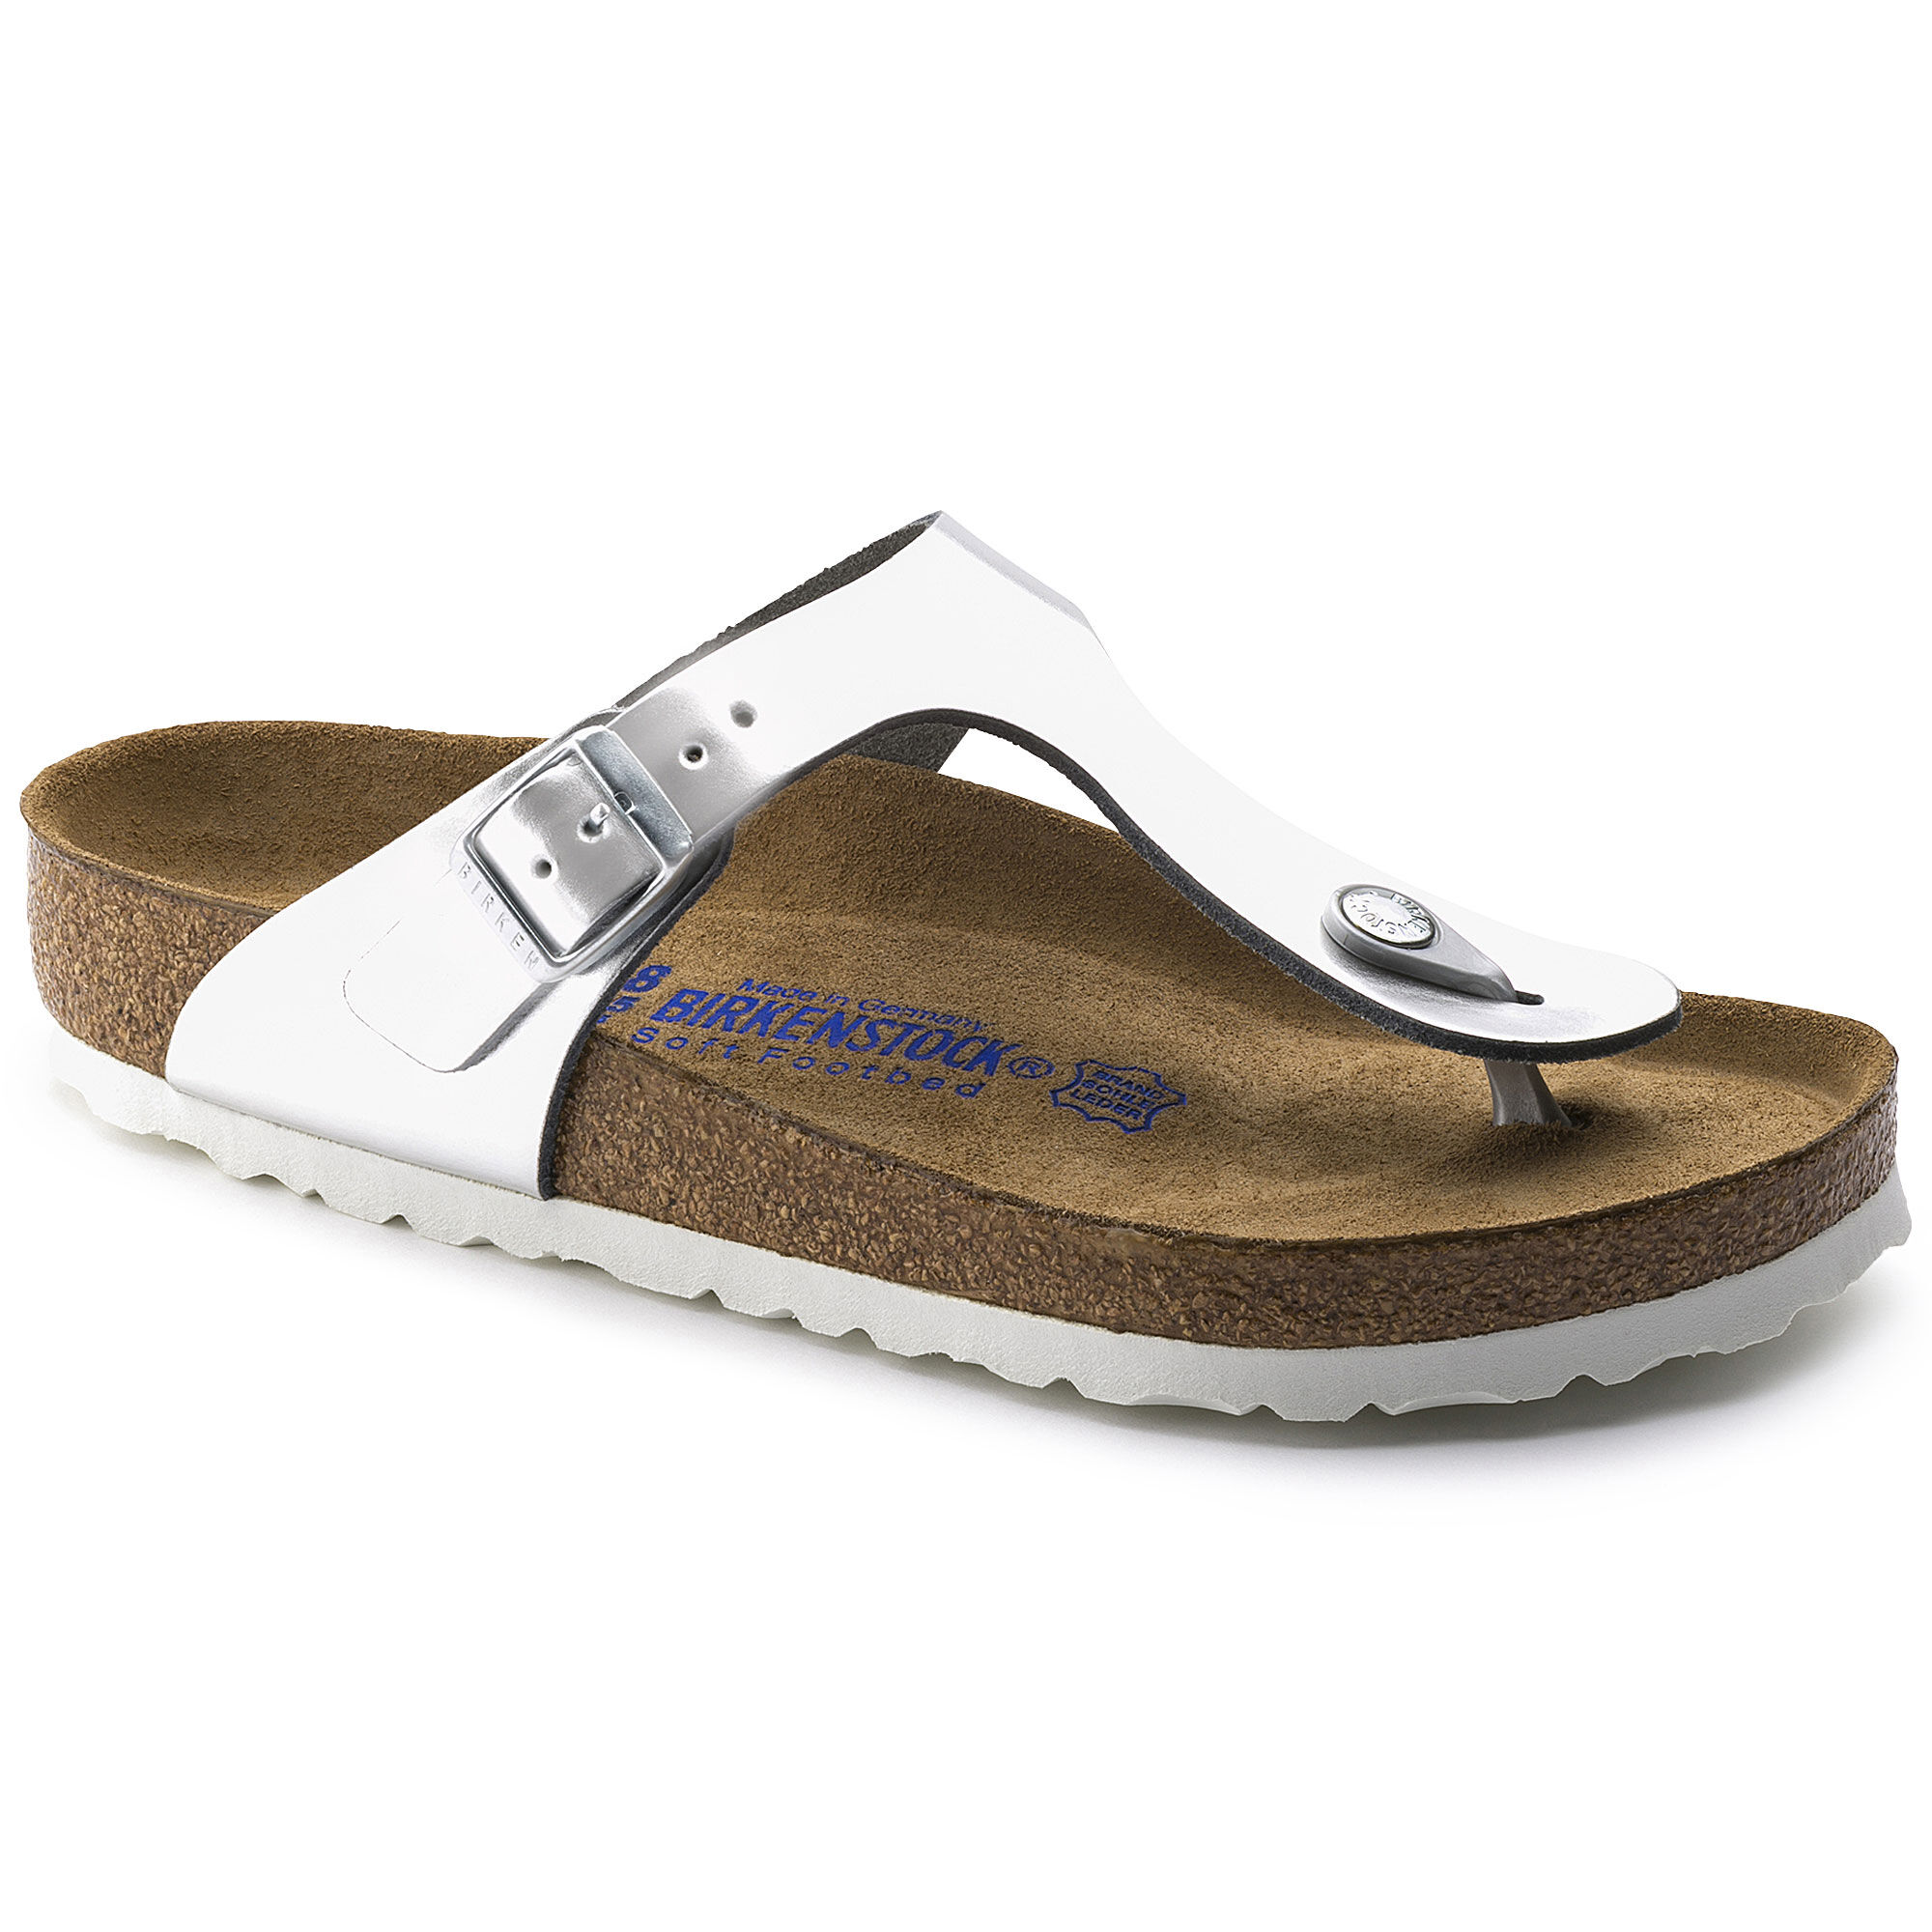 birkenstock thong sandals sale